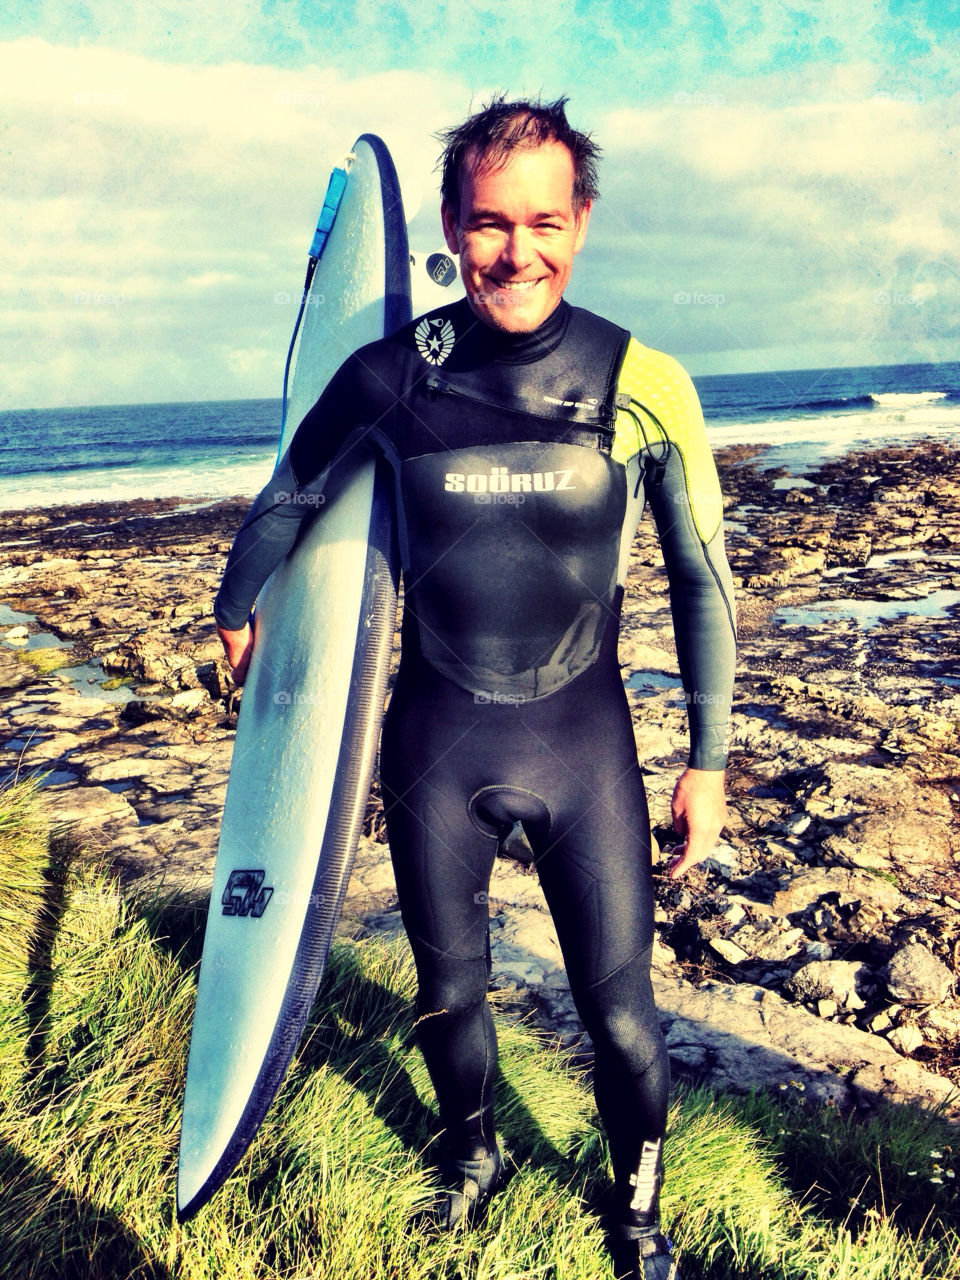 ireland sports surf surfer by ronnestam